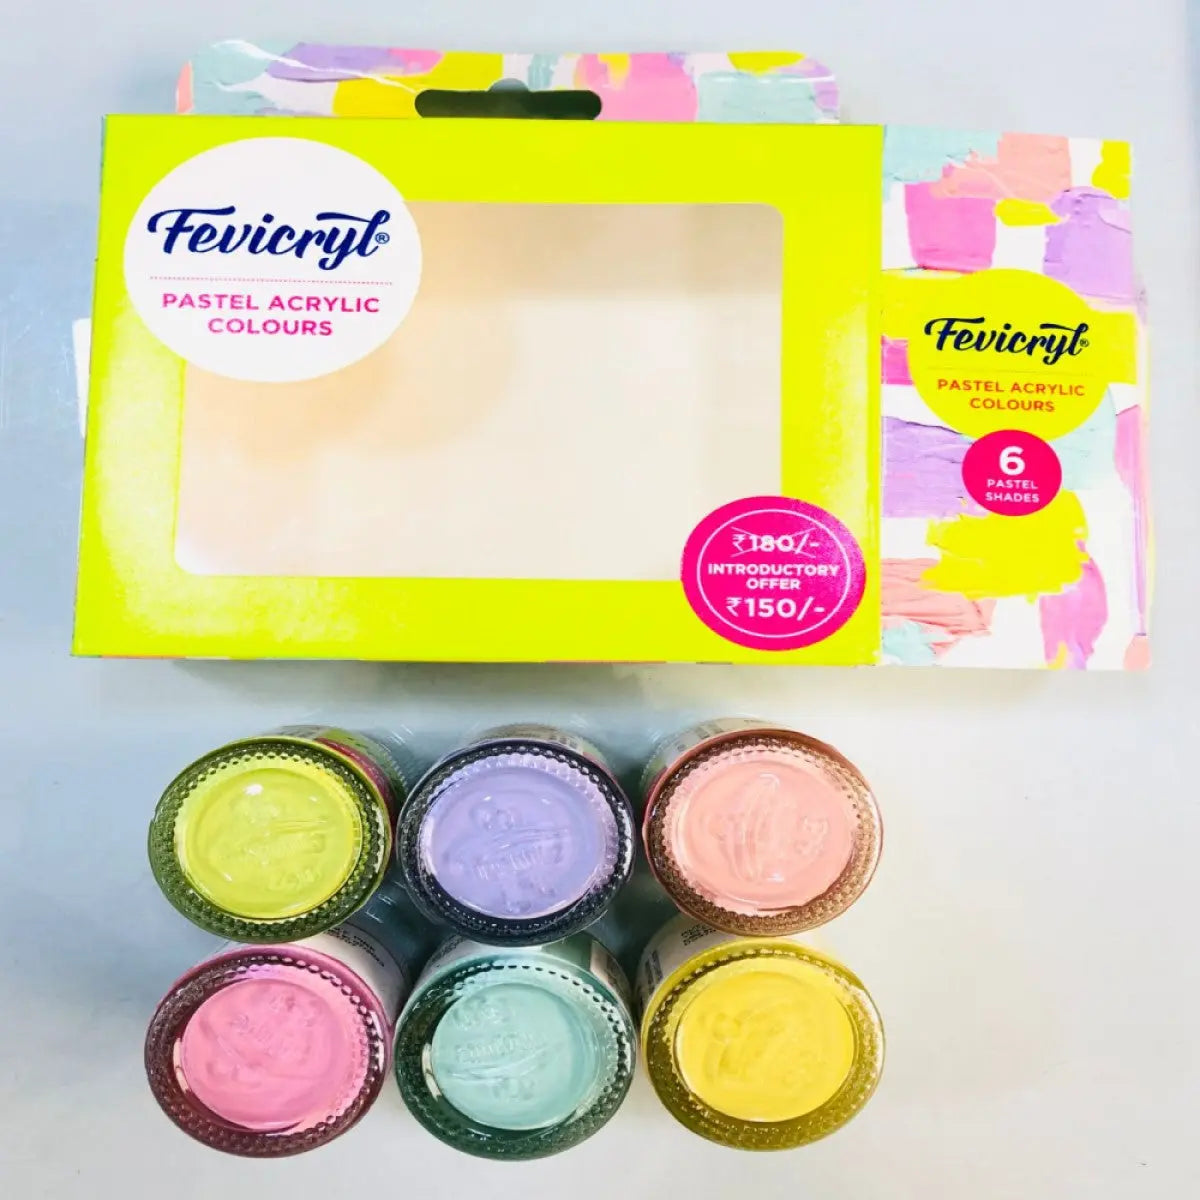 Fevicryl Pastel Acrylic Colours - Set of 6 (15ml) Fevicryl